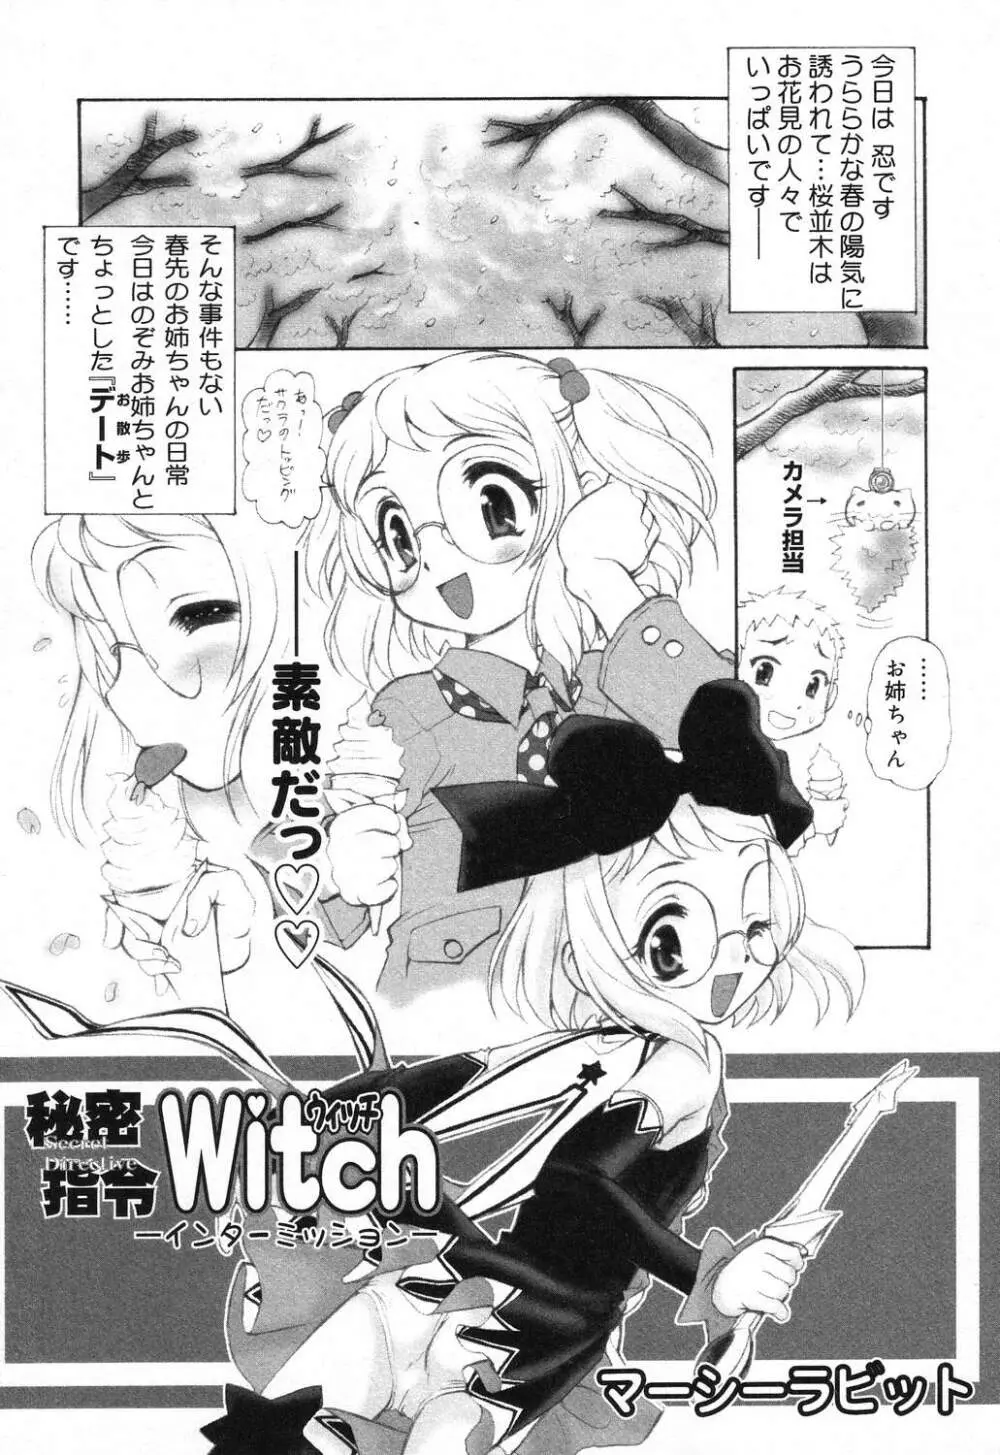 X Mitsu Shirei Witch 1-9 73ページ